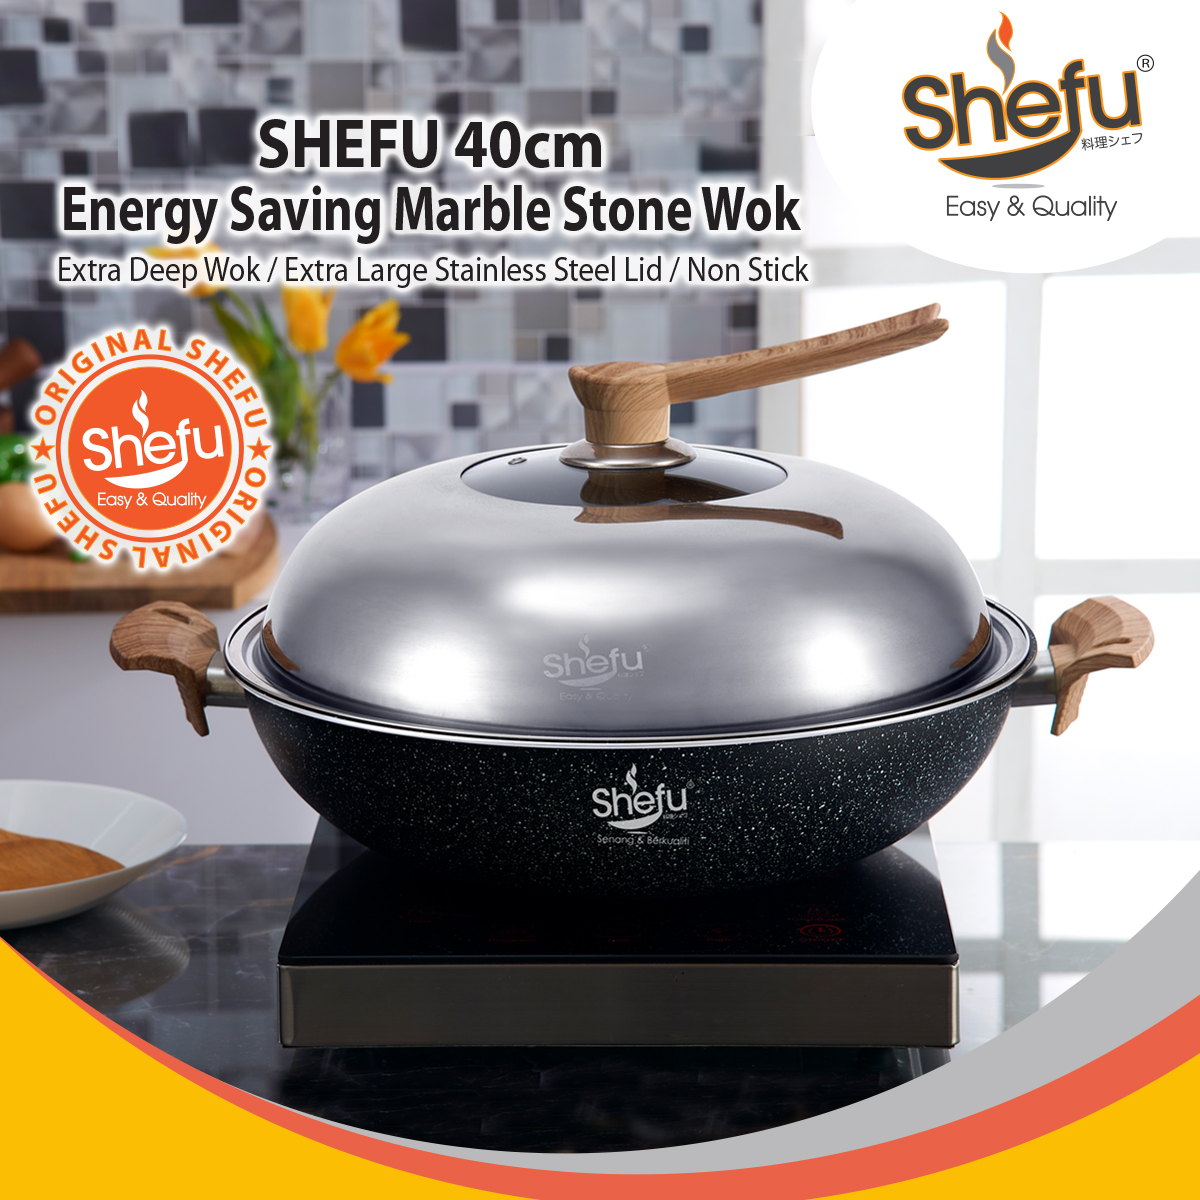 SHEFU 40cm Marble Stone Wok With 3pcs Utensil